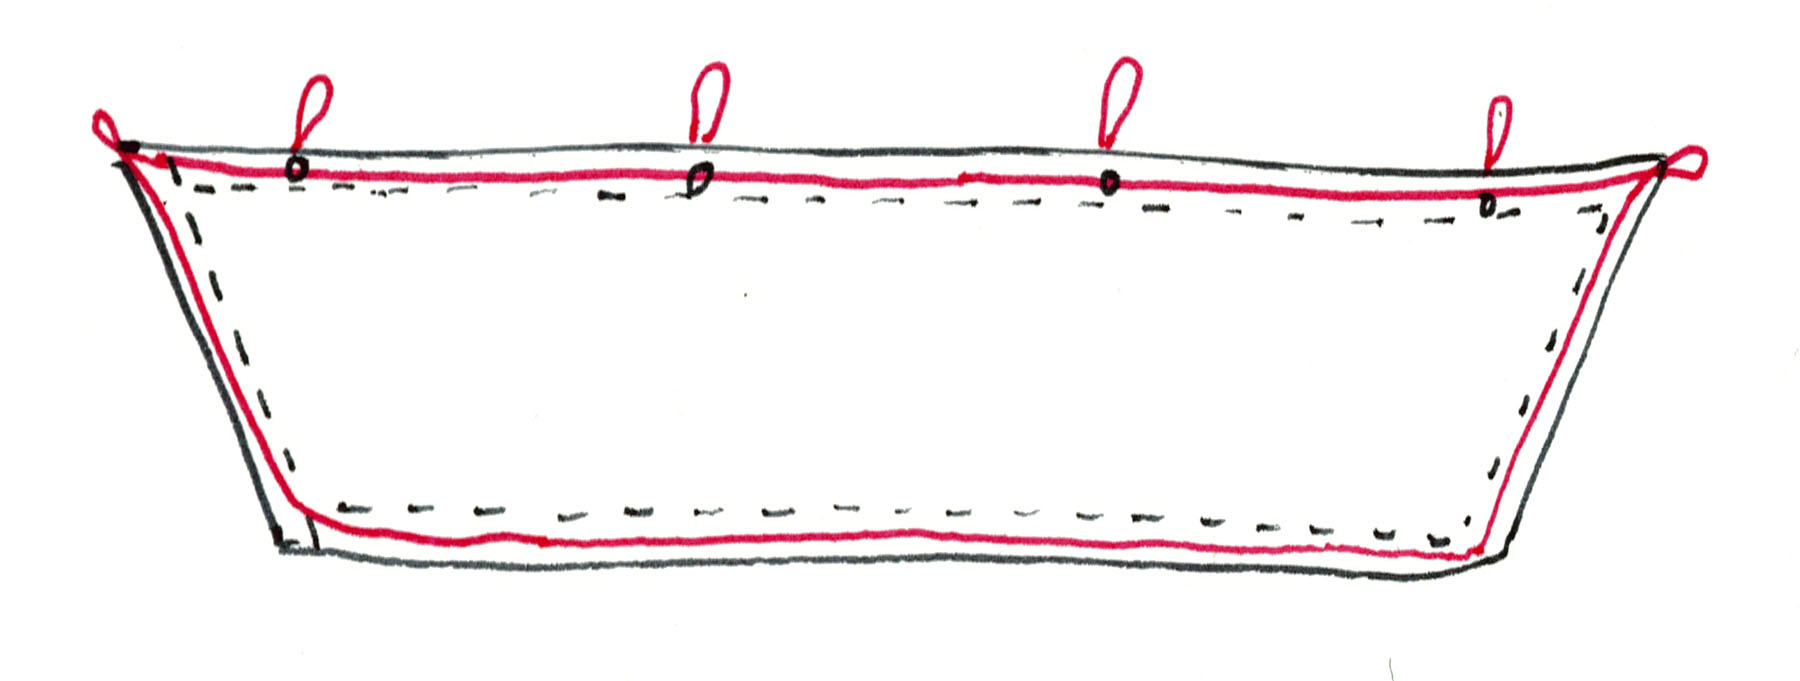 sign loop diagram 